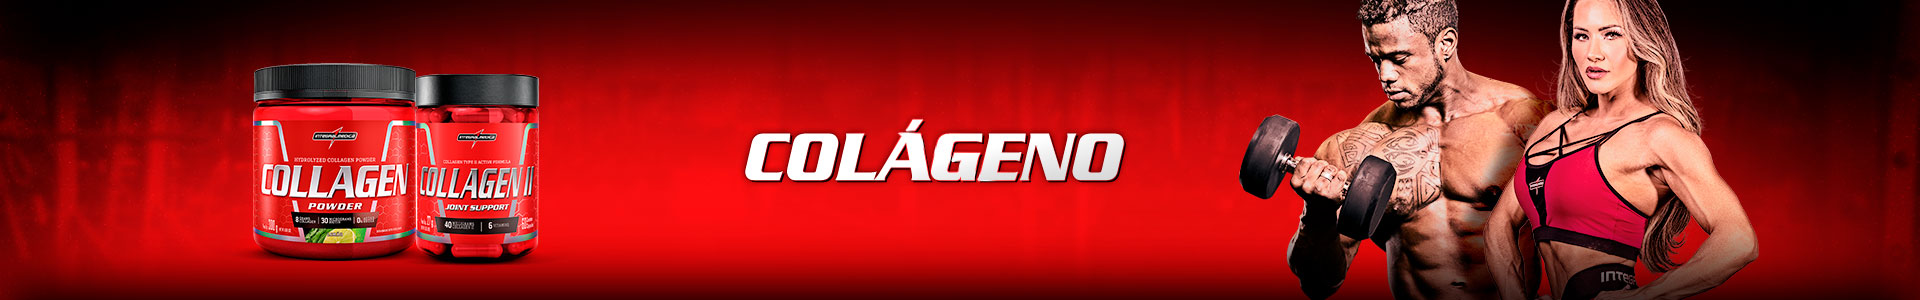 Banner - Colágeno - Mobile